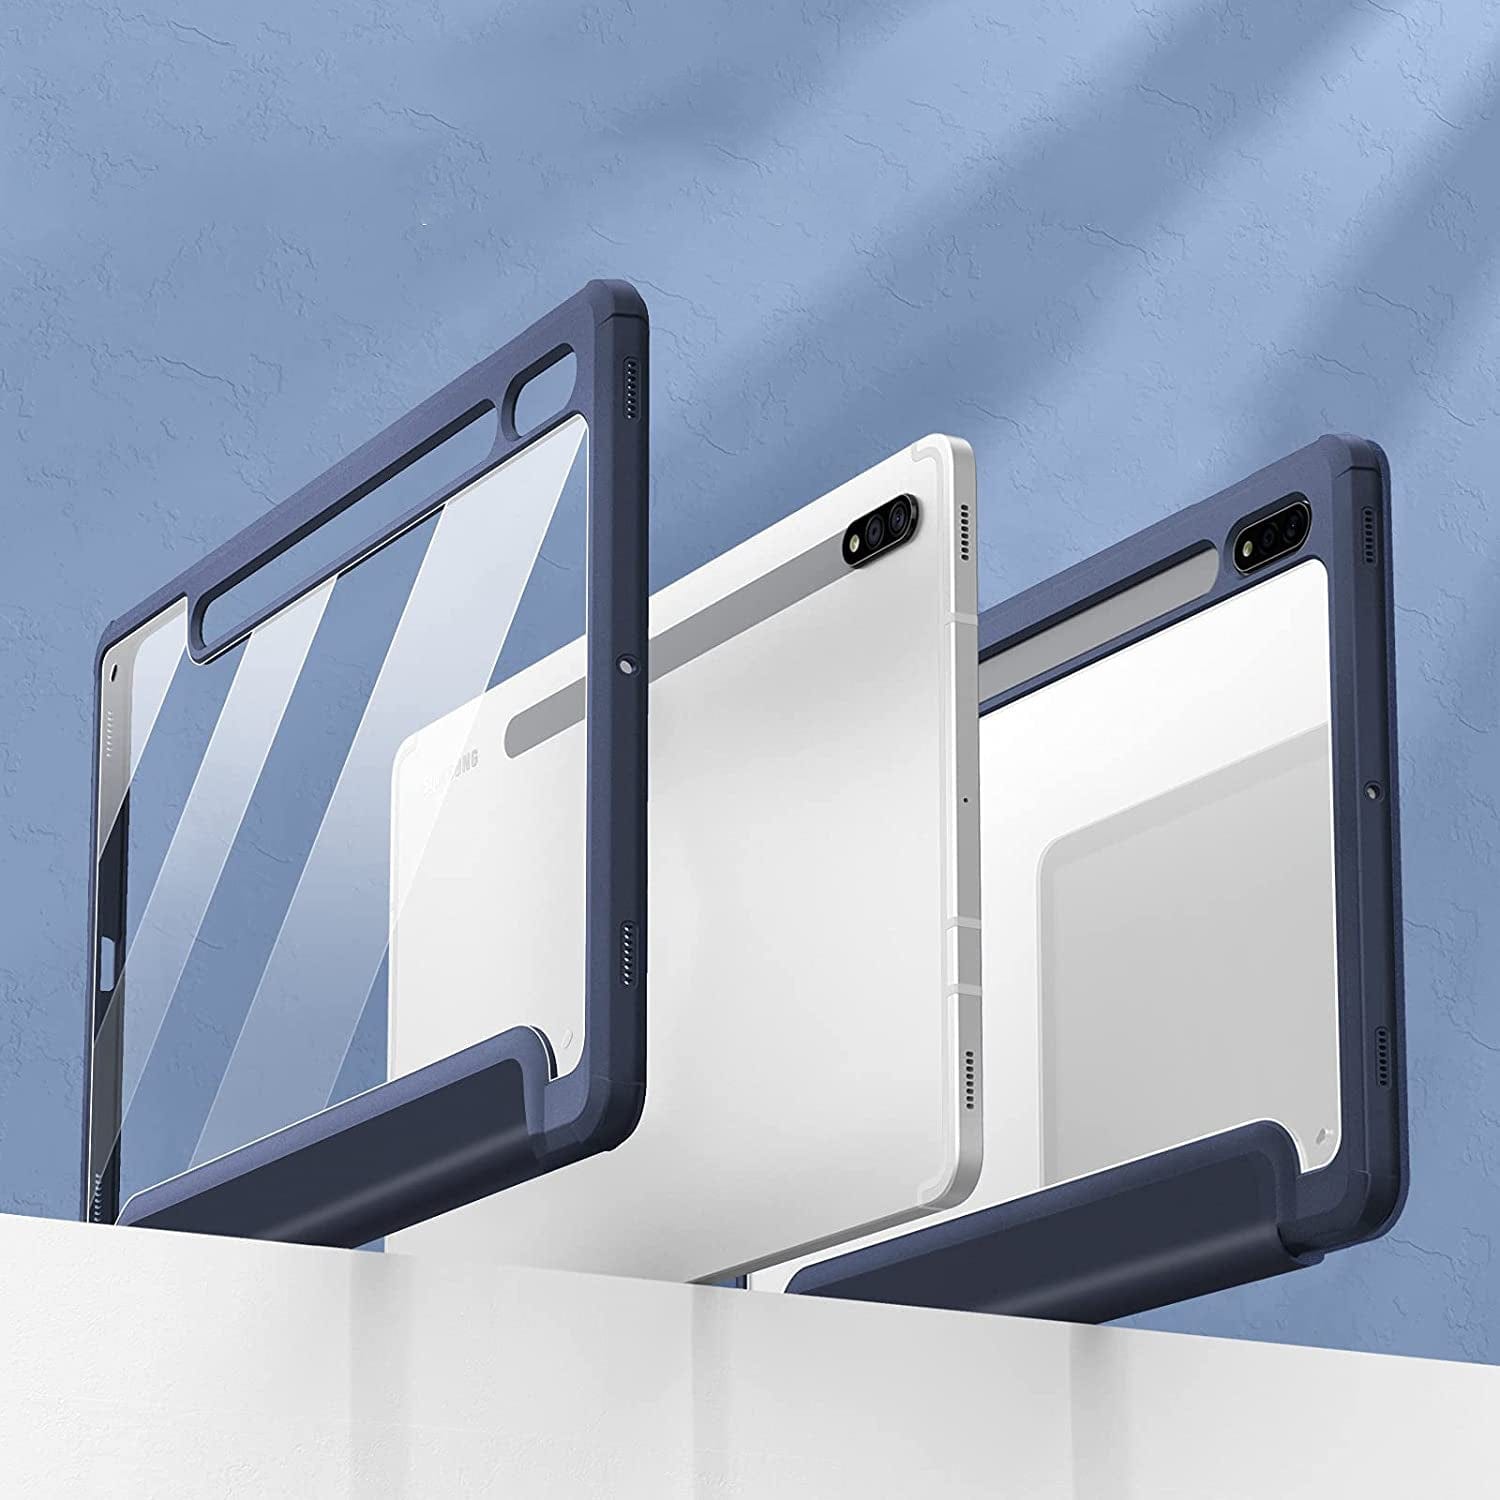 Indy Series Folio Case - Galaxy Tab S8